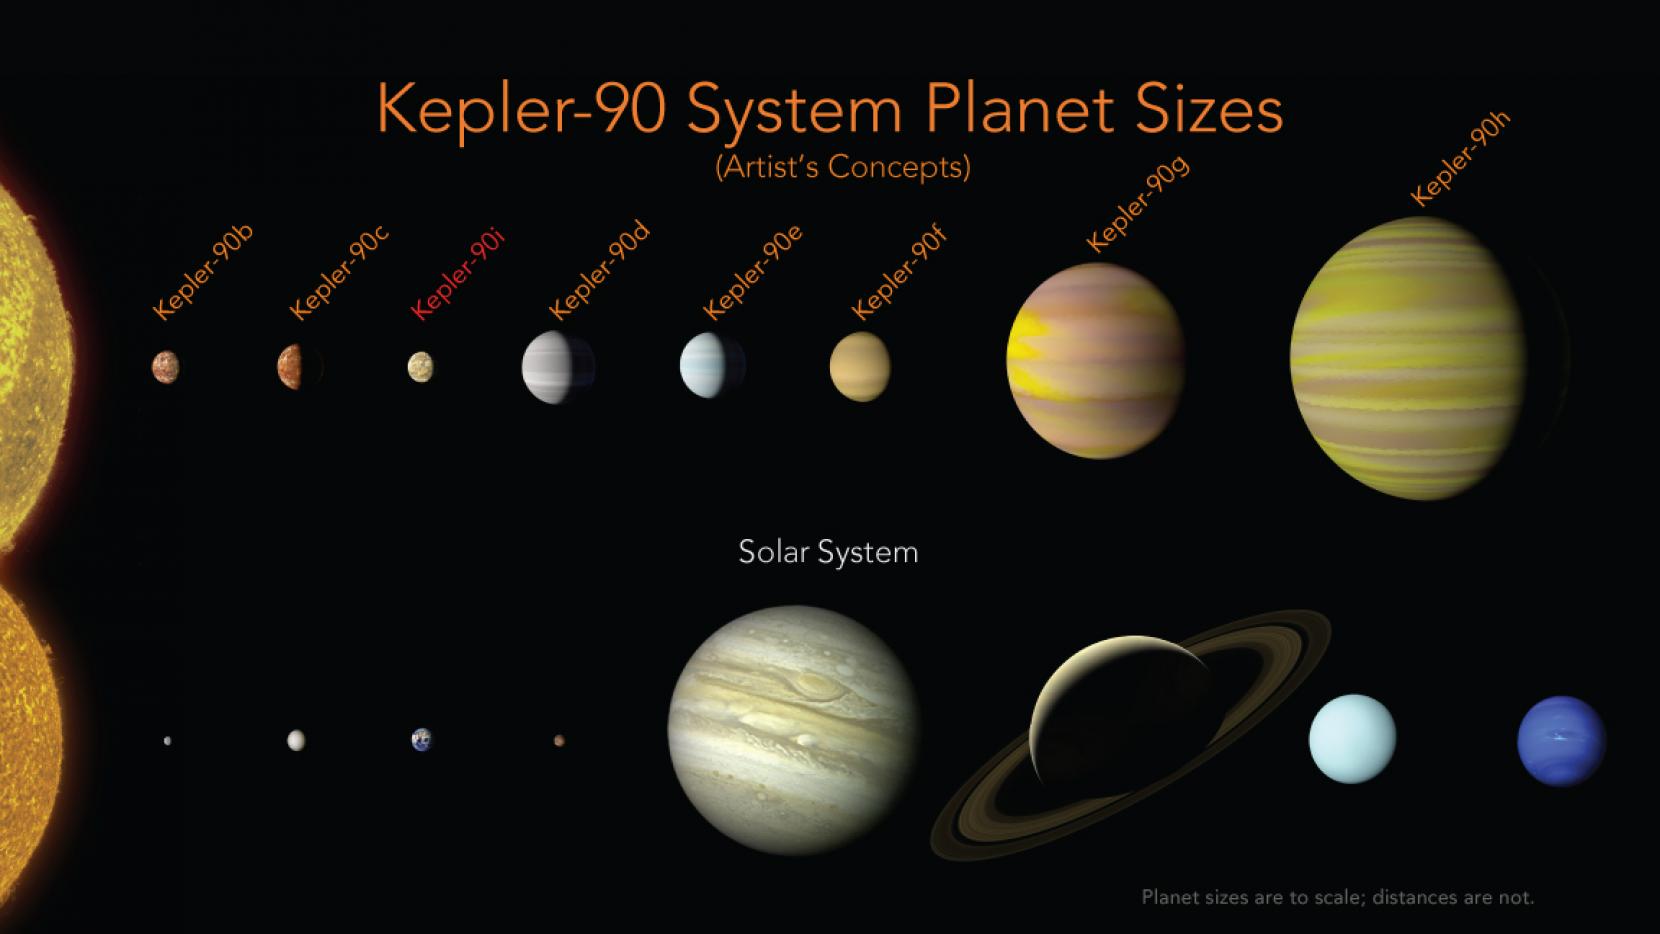 NASA ve Google açıkladı: İşte tam 8 gezegenli Güneş Sistemi